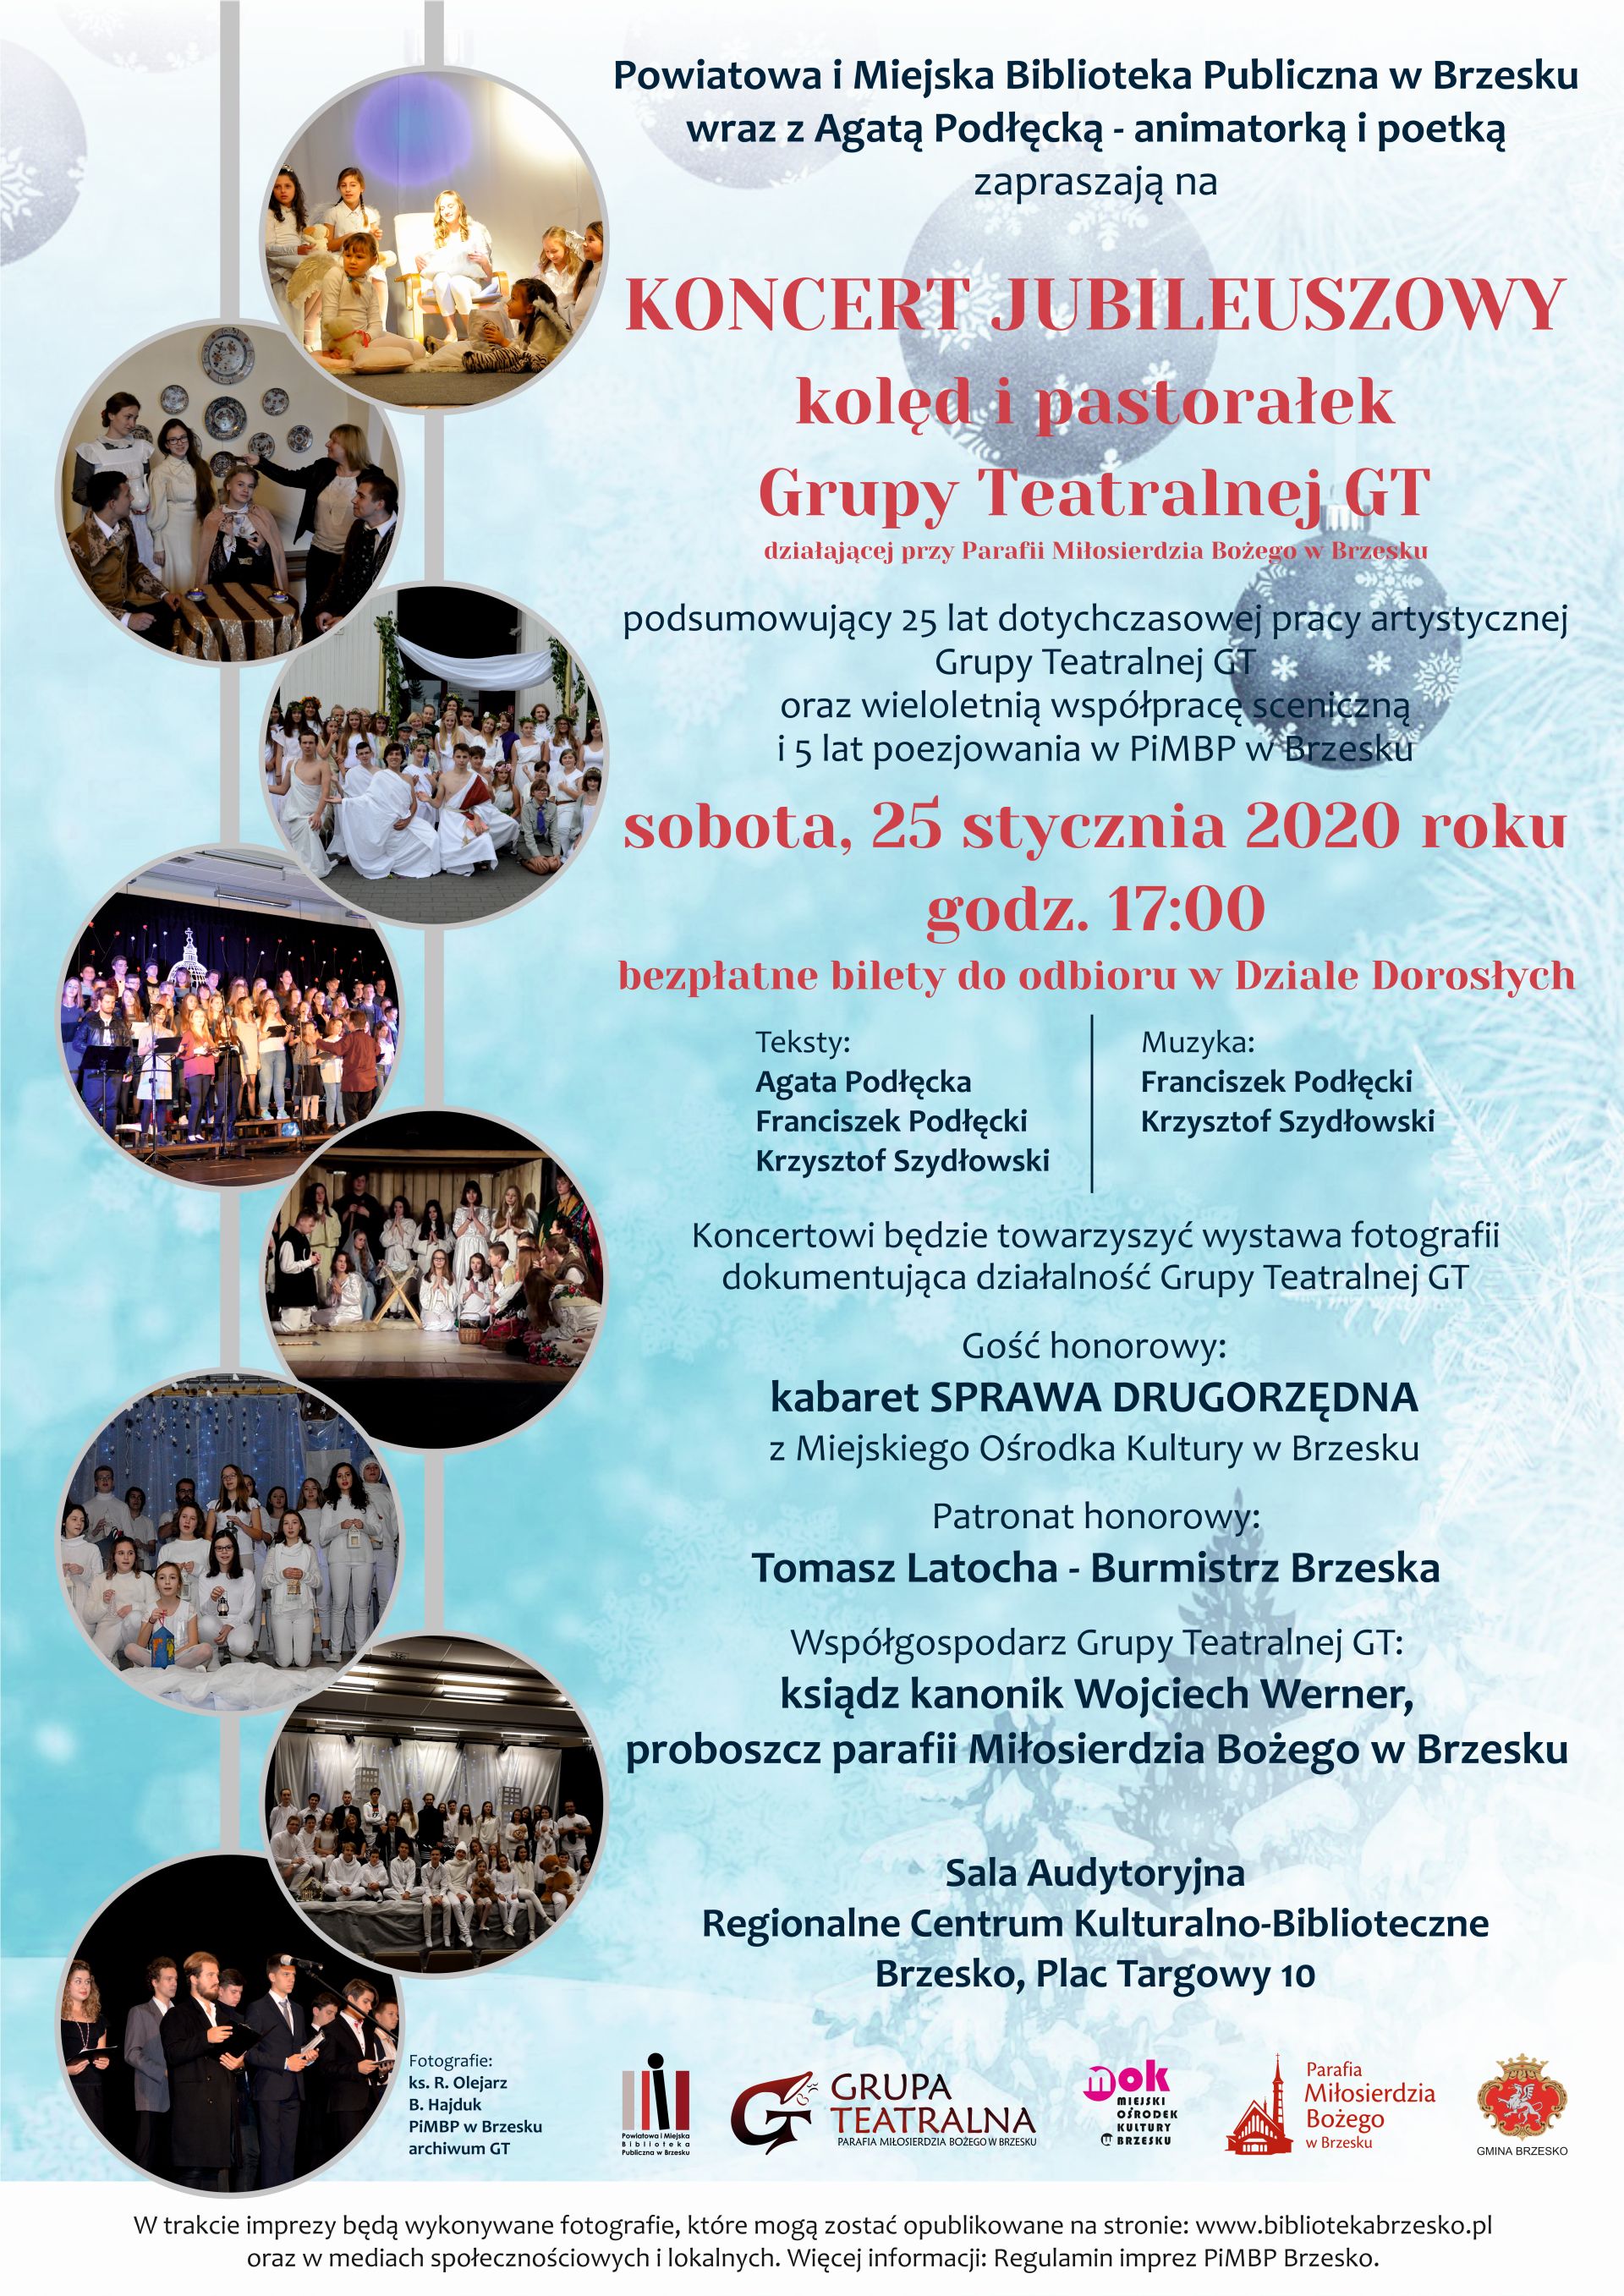 plakat promujący koncert jubileuszowy kolęd i pastorałek Grupy Teatralnej GT